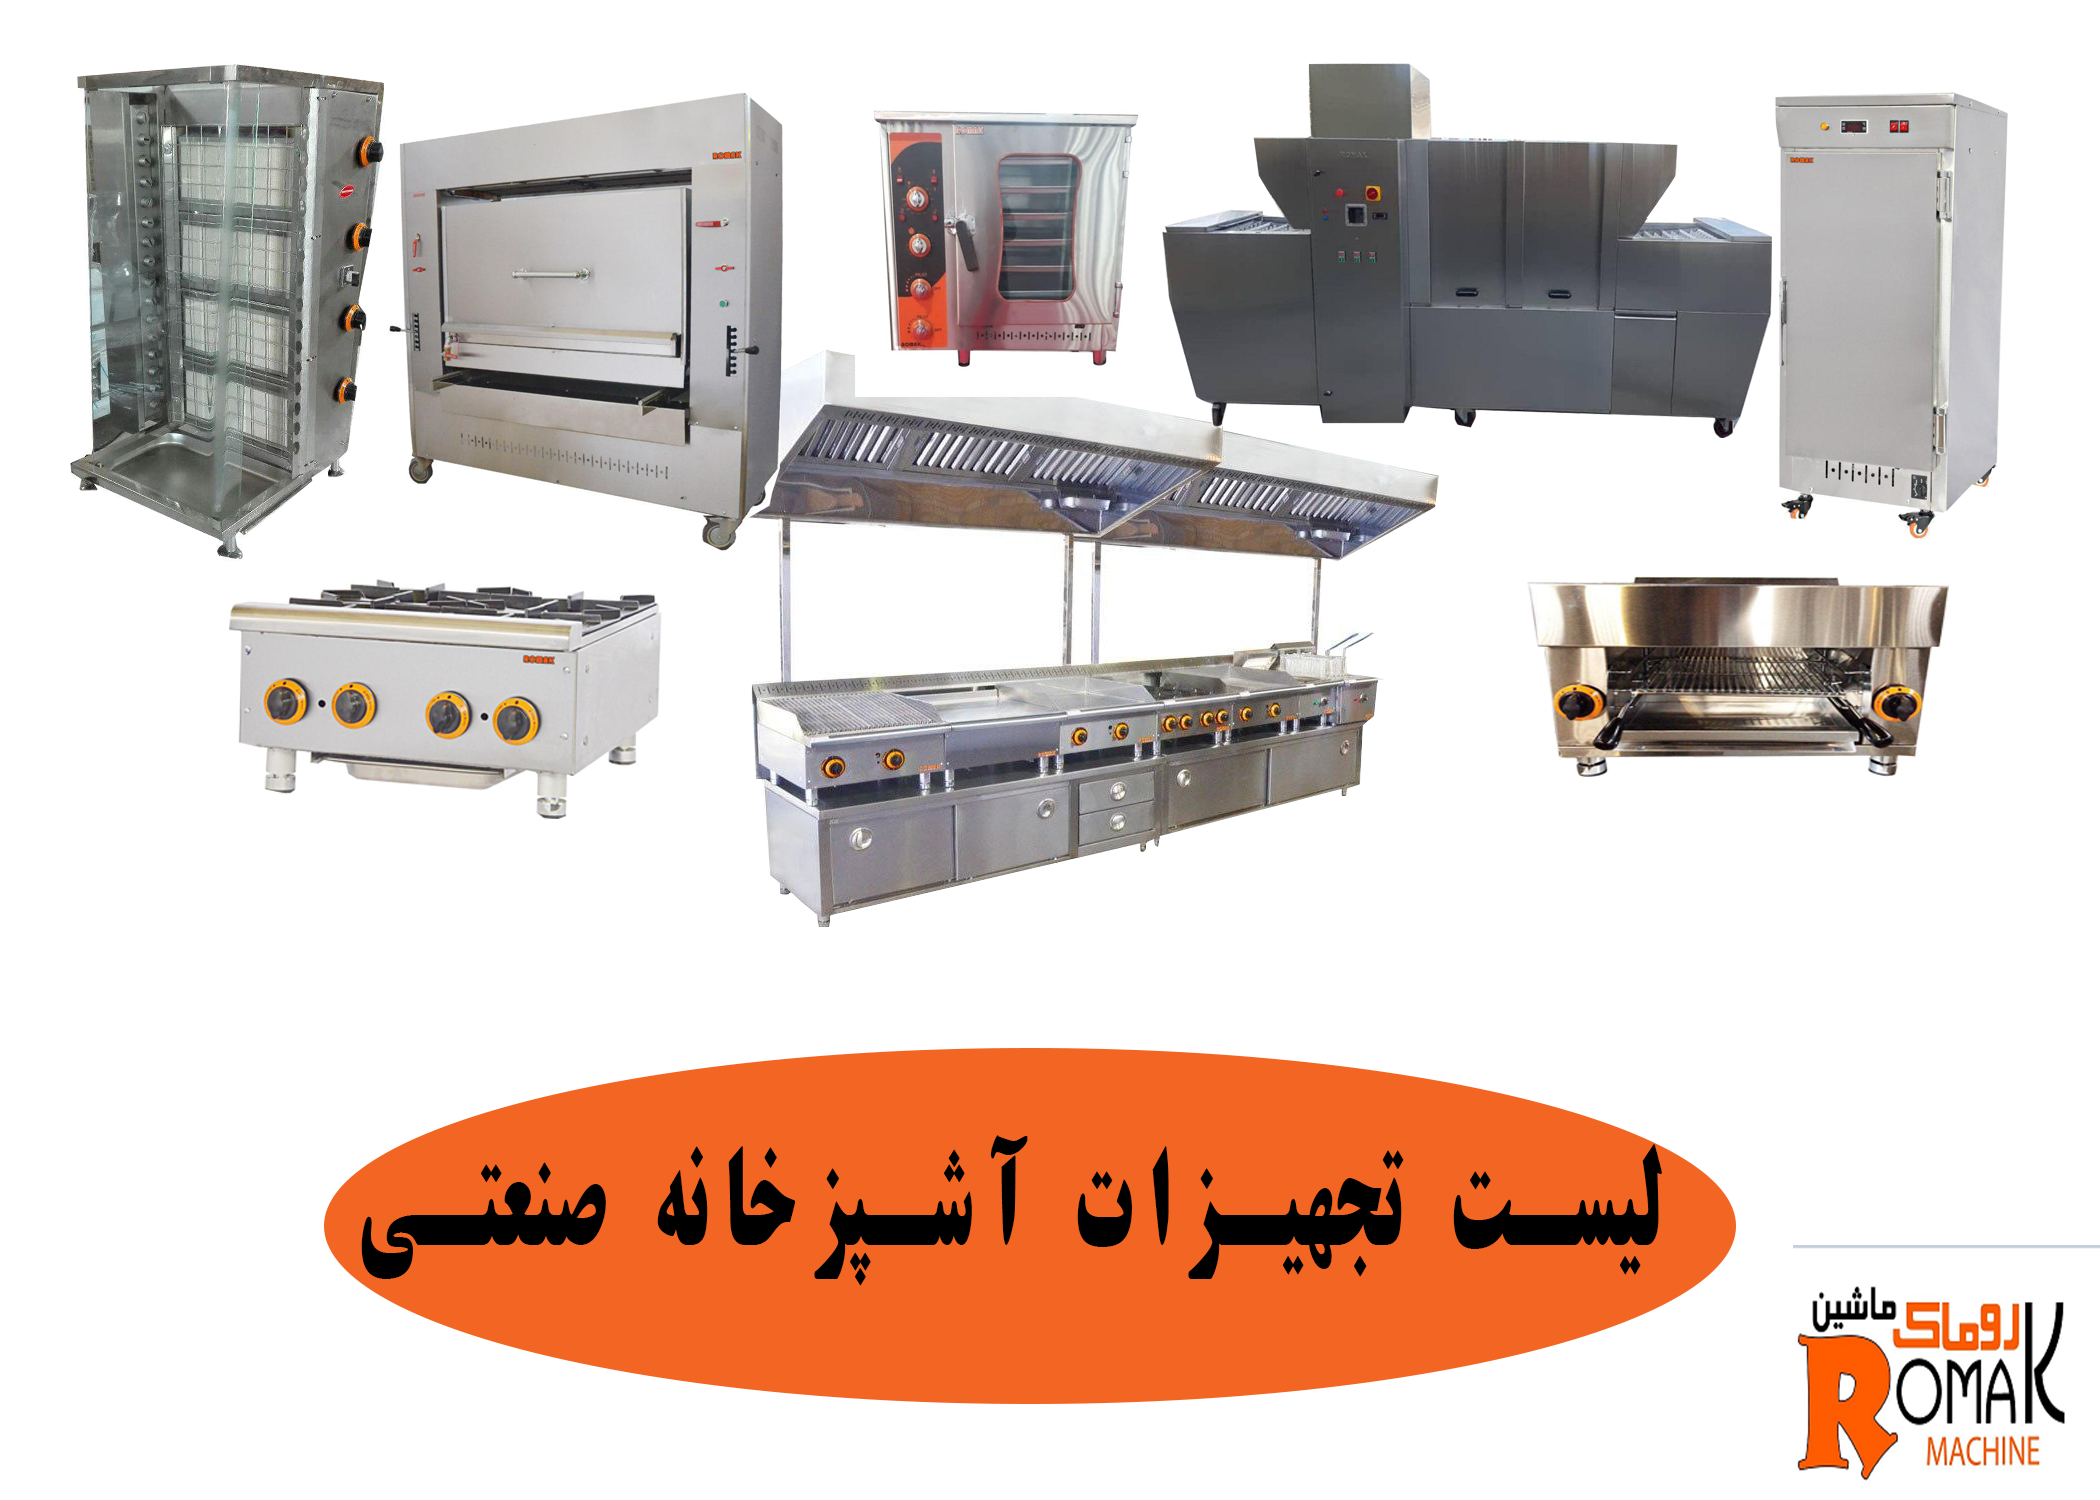 لیست تجهیزات آشپزخانه صنعتی